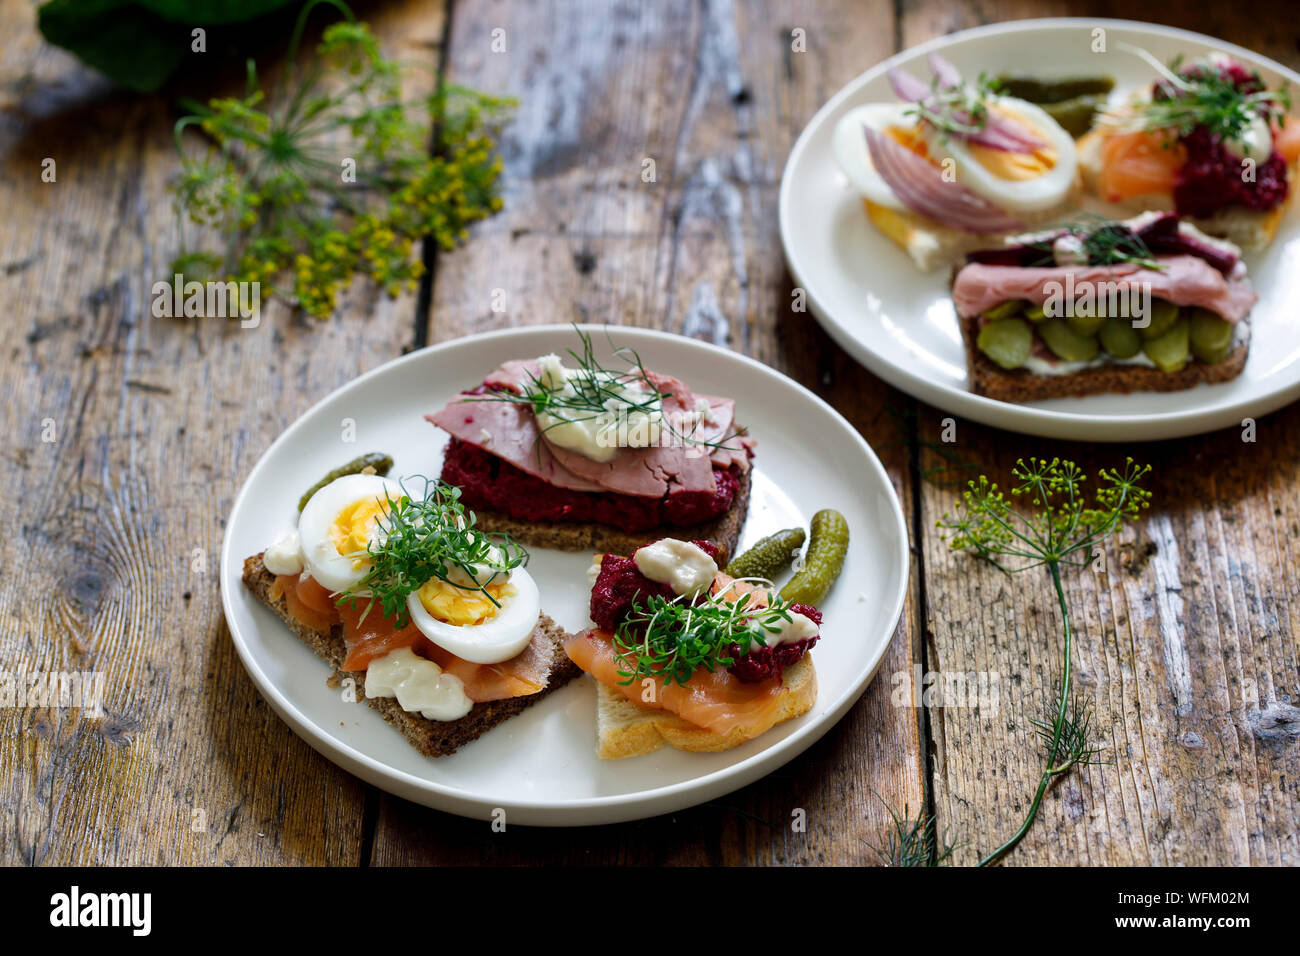 Sélection de sandwiches ouverts scandinave avec du boeuf, de betteraves et d'oeufs Banque D'Images